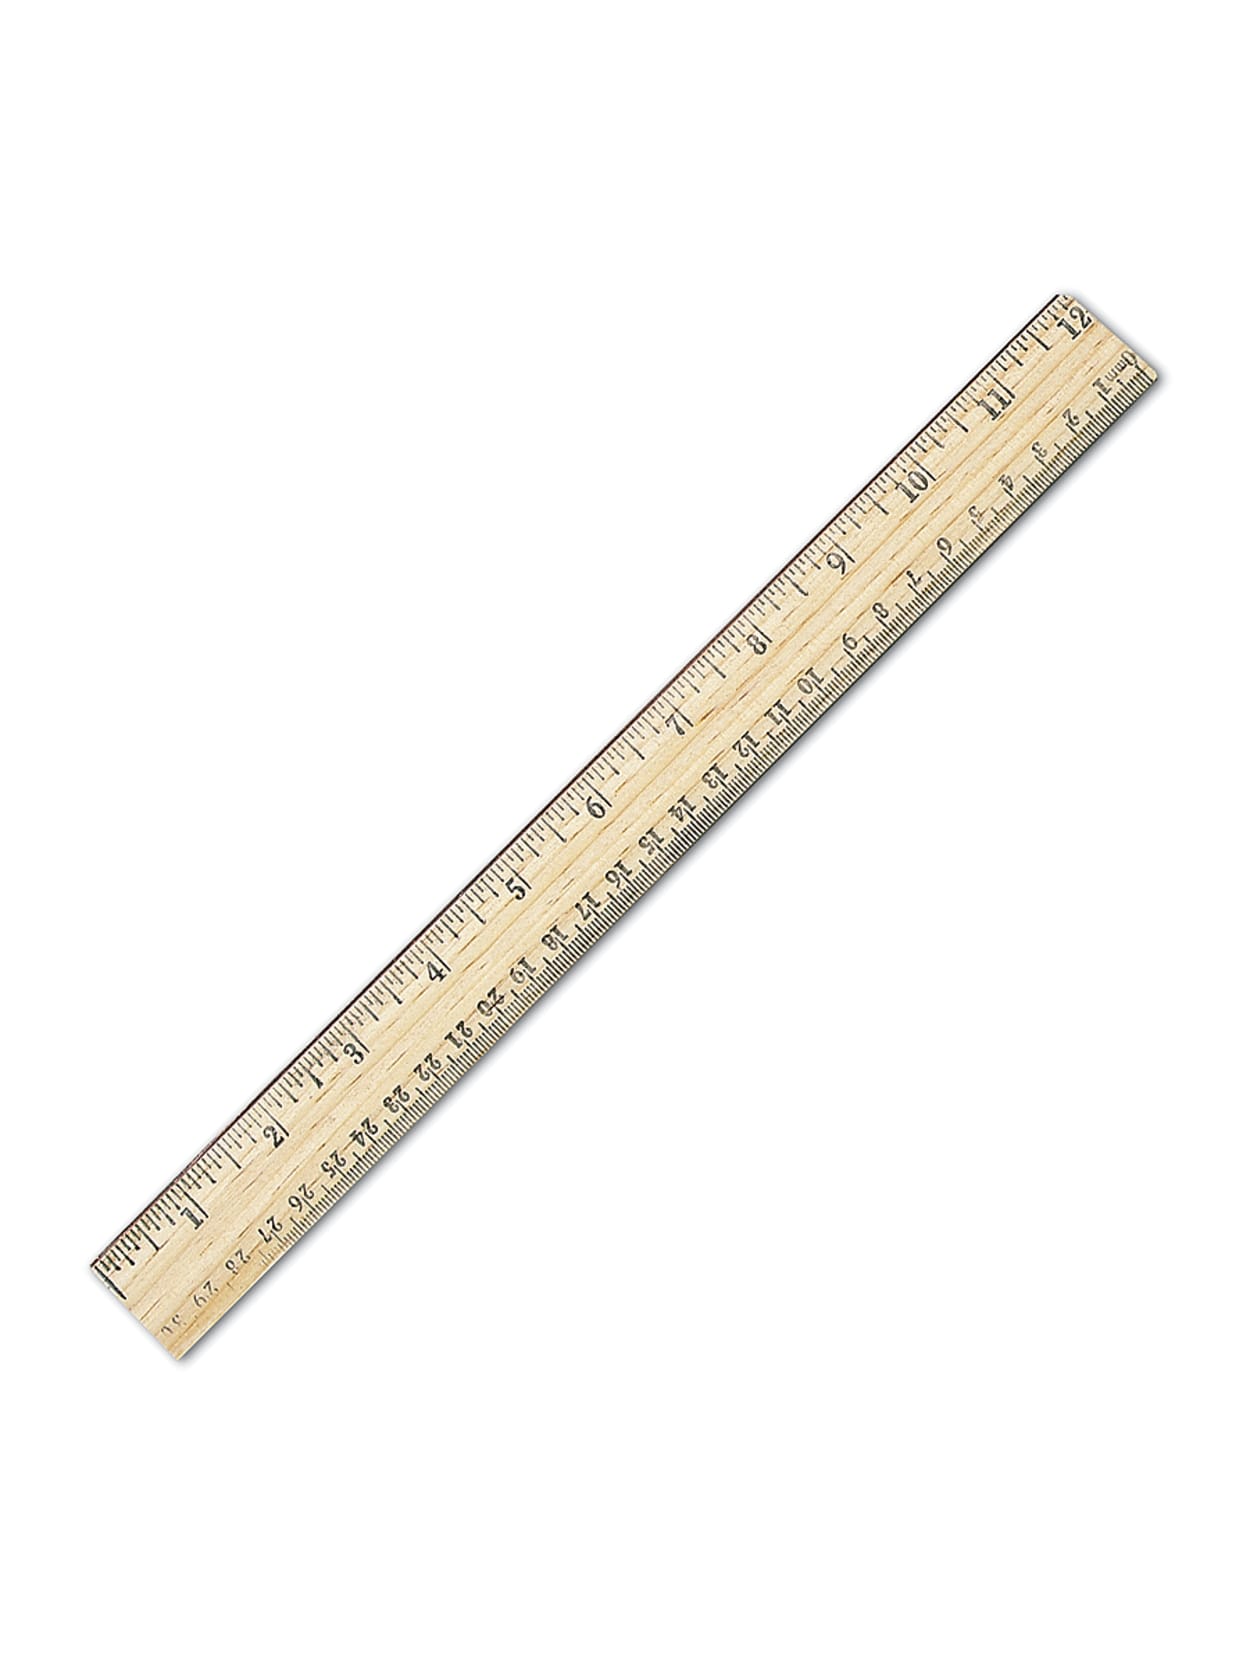 real metric ruler